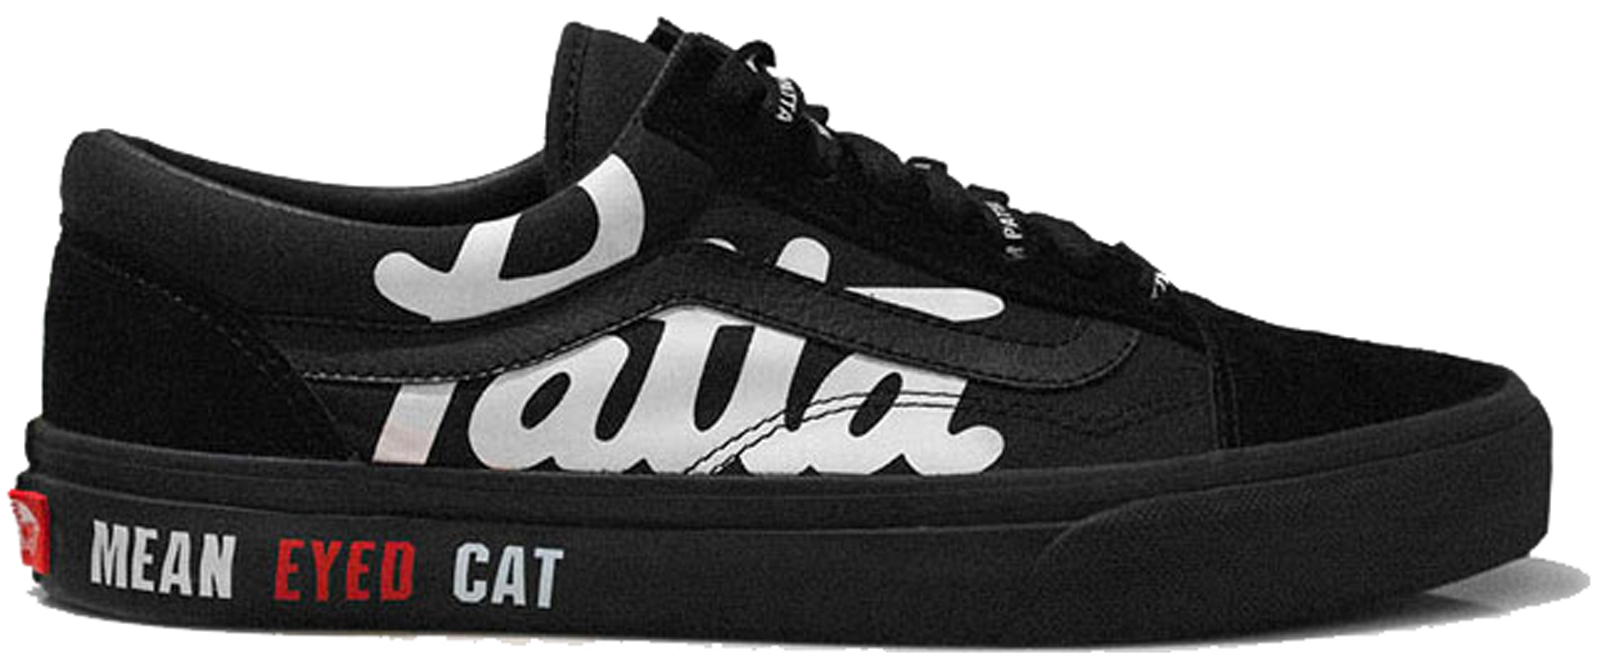 sneakers Vans Old Skool Patta x Beams Mean Eyed Cat